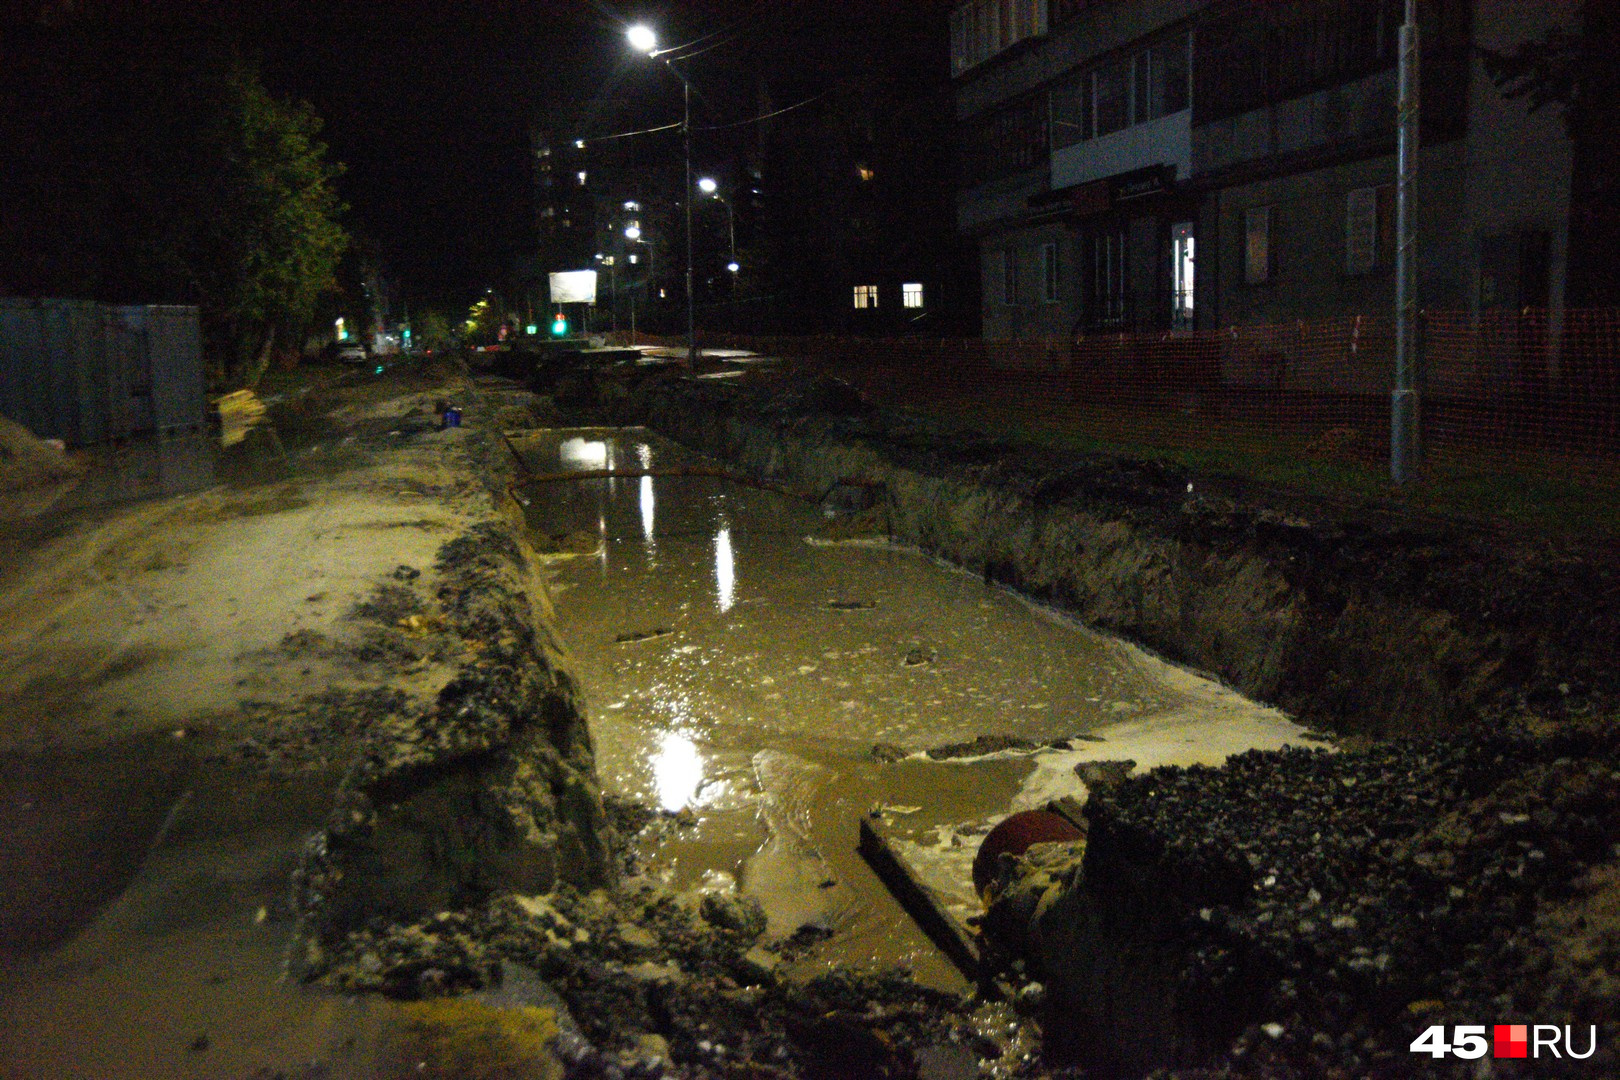 Последствия ливня для улицы Горького, про которую уже пошутили, что раскопка стала своим каналом, как в Венеции